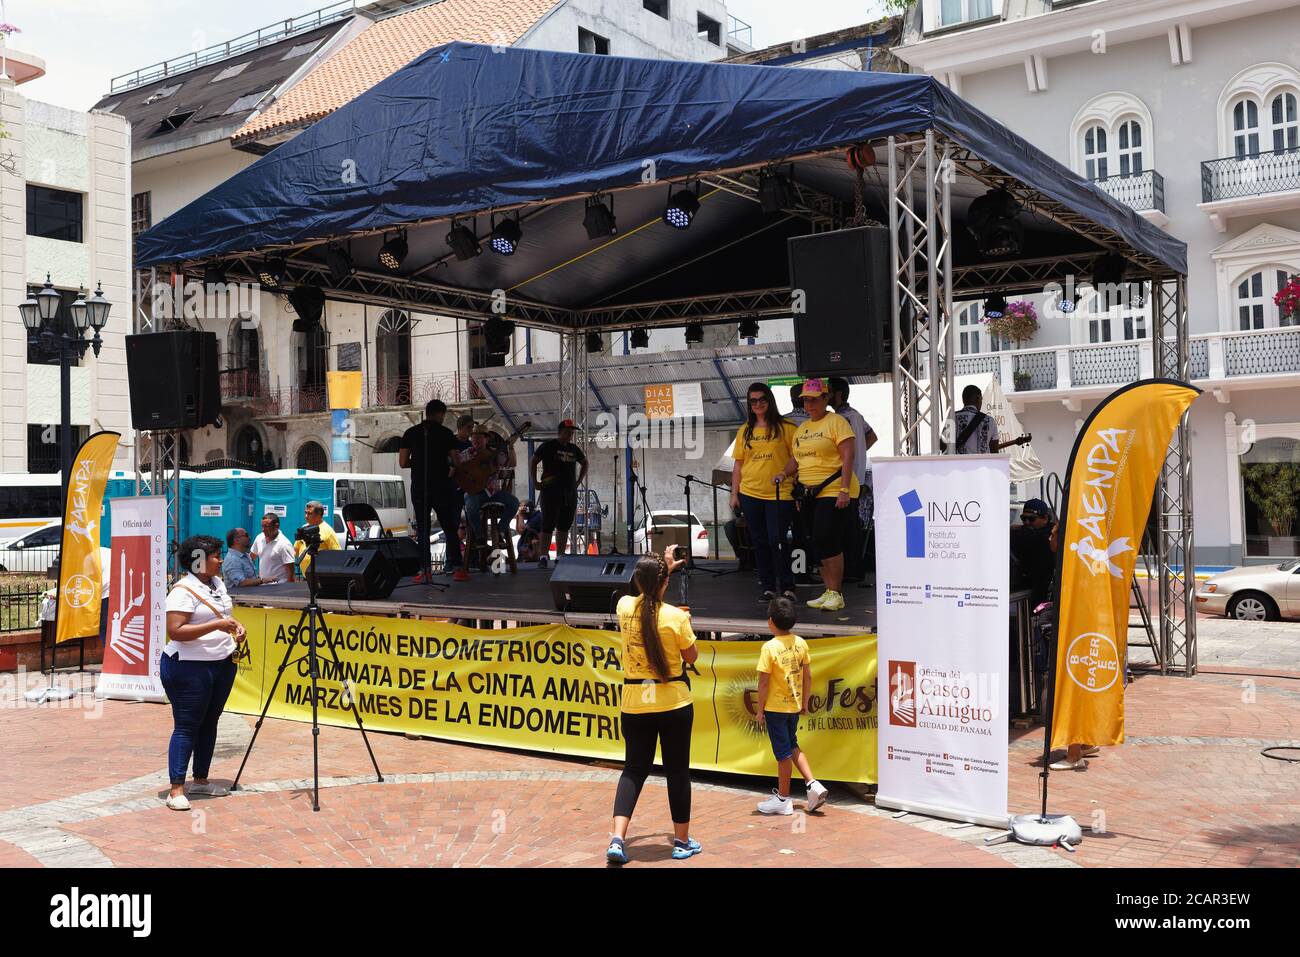 Ruban jaune, prévention du suicide chez les jeunes, rassemblement à Independence Plaza, Panama City, Panama, Amérique centrale Banque D'Images